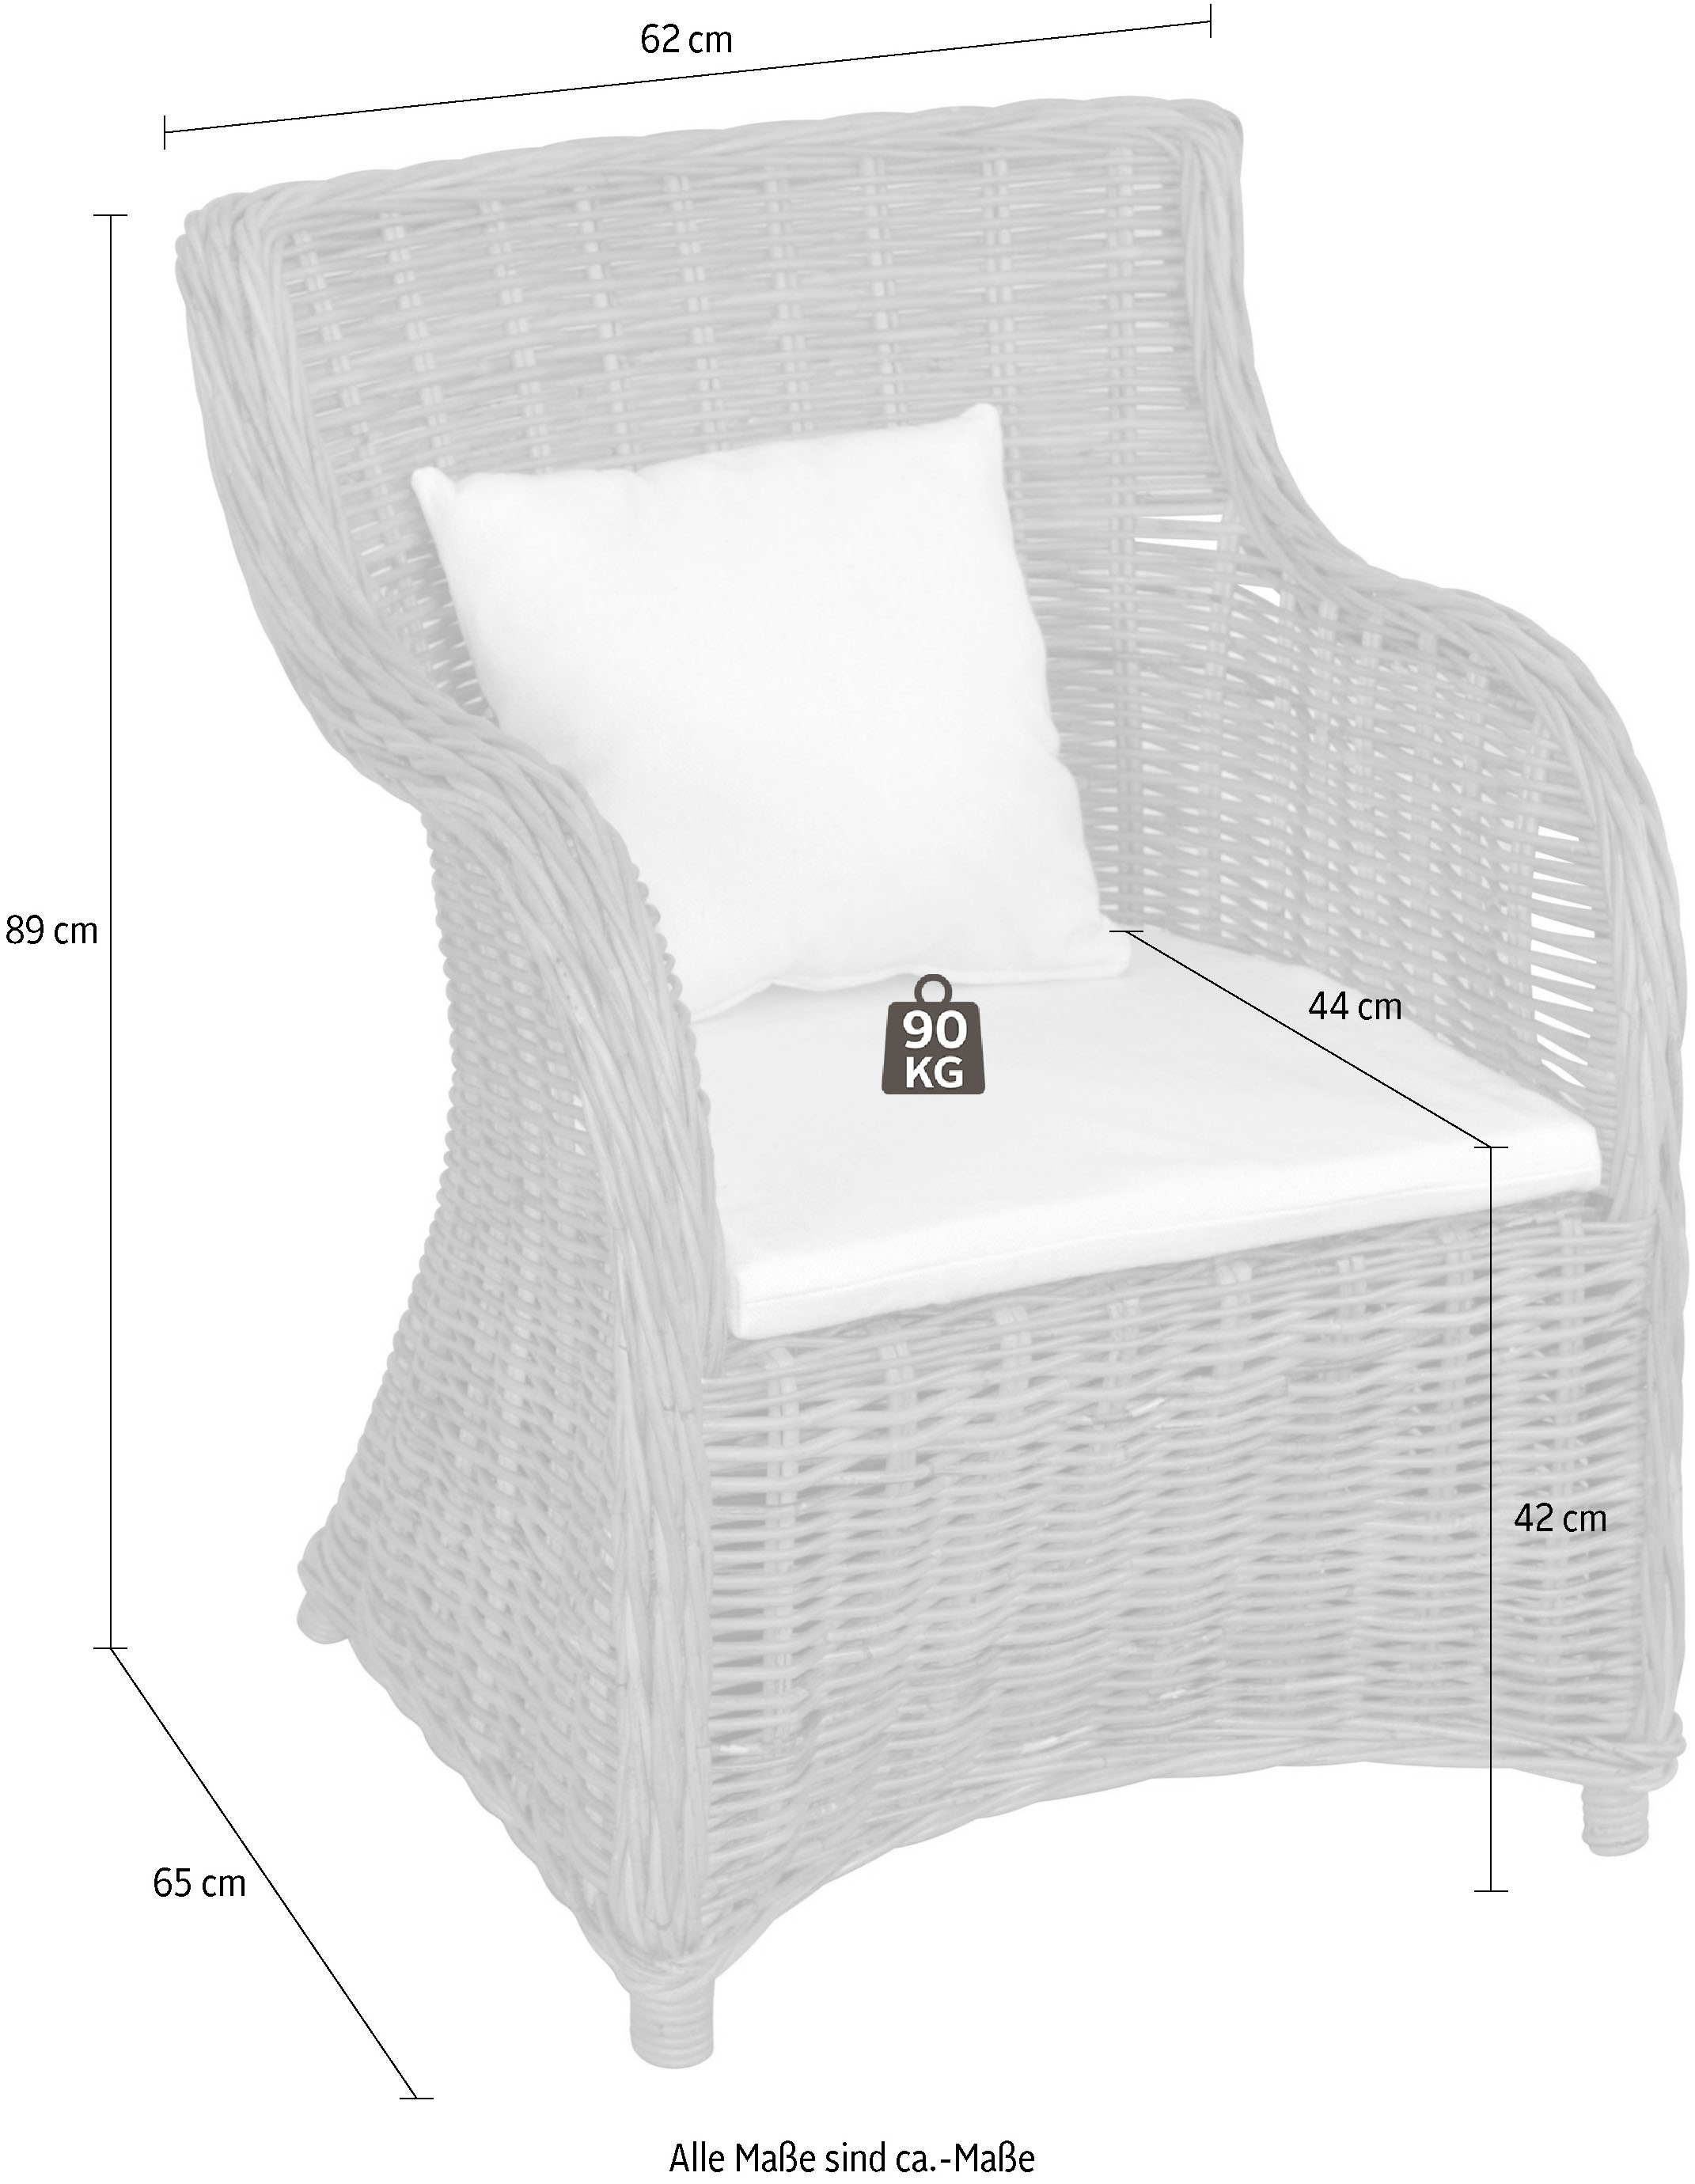 Home affaire Rattanstuhl, aus handgeflochtenem Rattan und grosser Sitzschale, Breite 62 cm